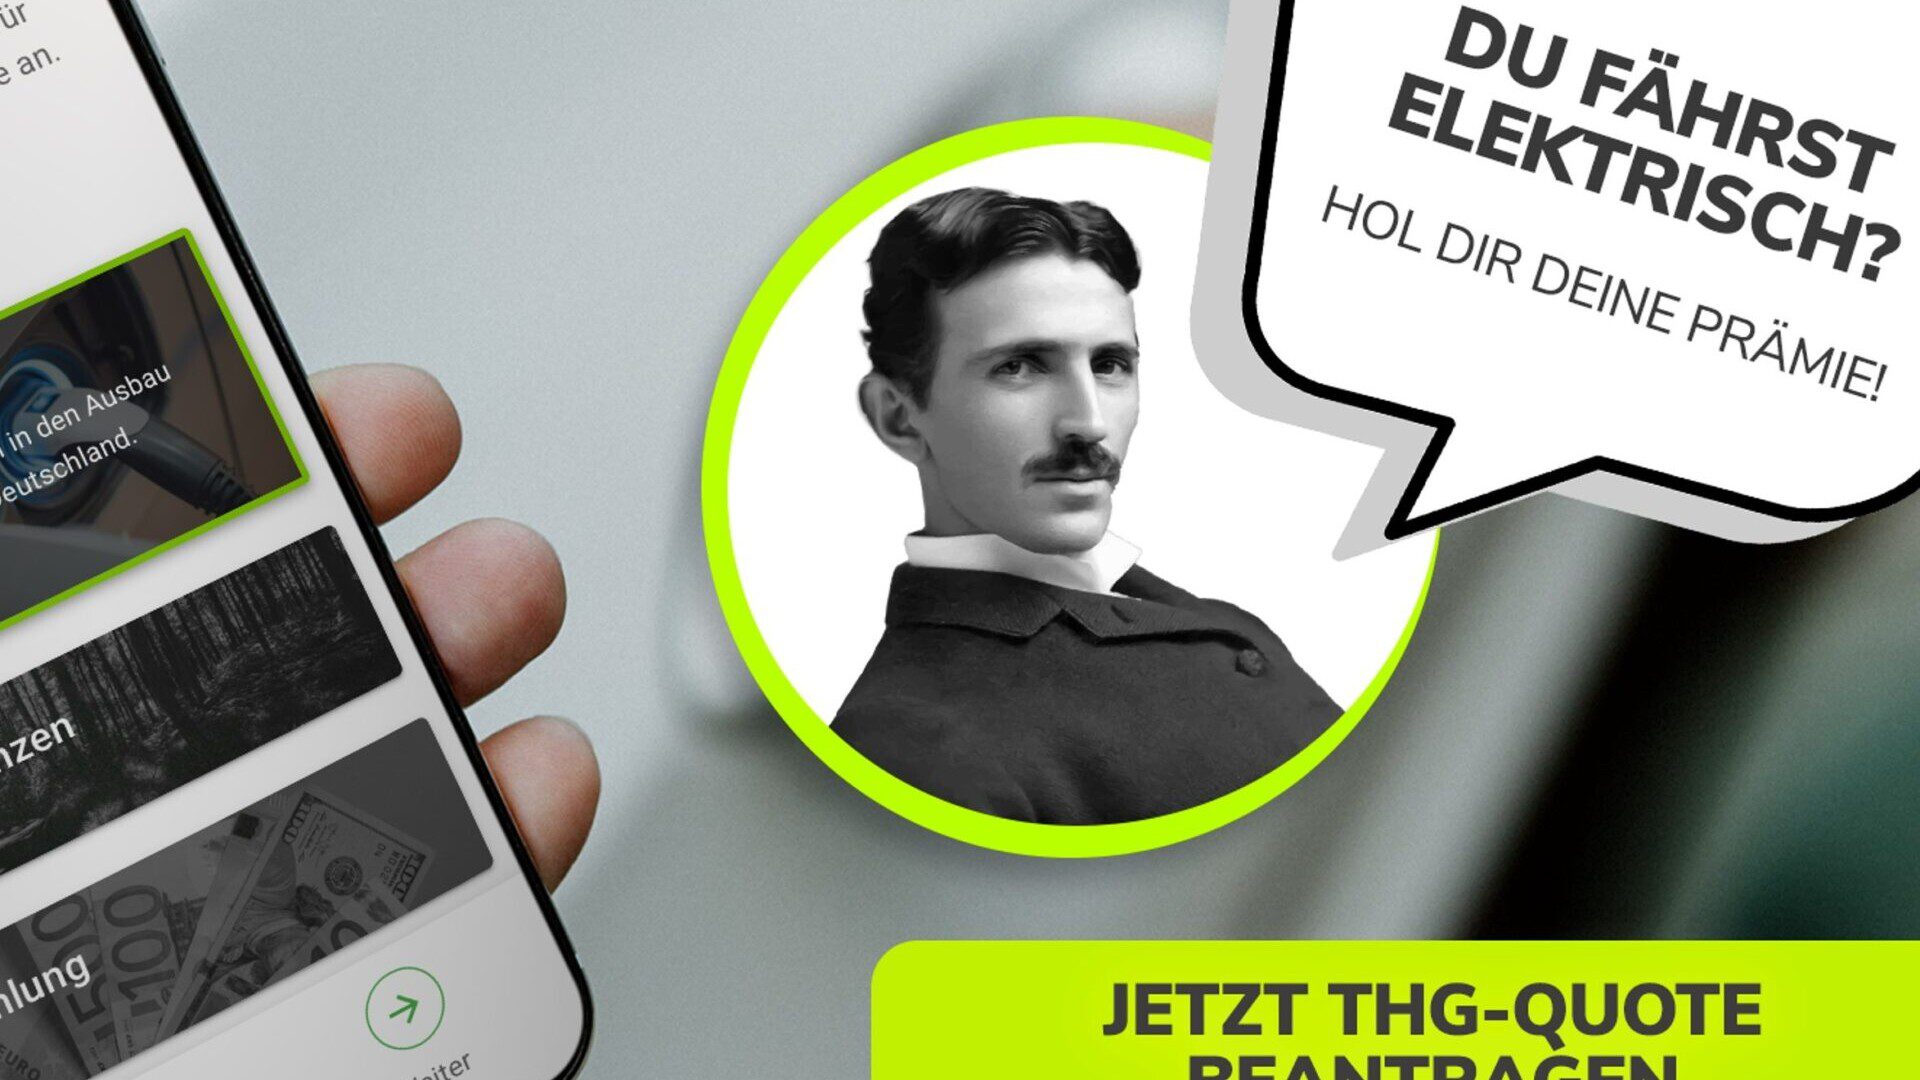 Ein Werbeplakat mit dem Portrait von Niklas Tesla, mit Sprechlase. Du fährst elektrisch? Hol Dir Deine Prämie!